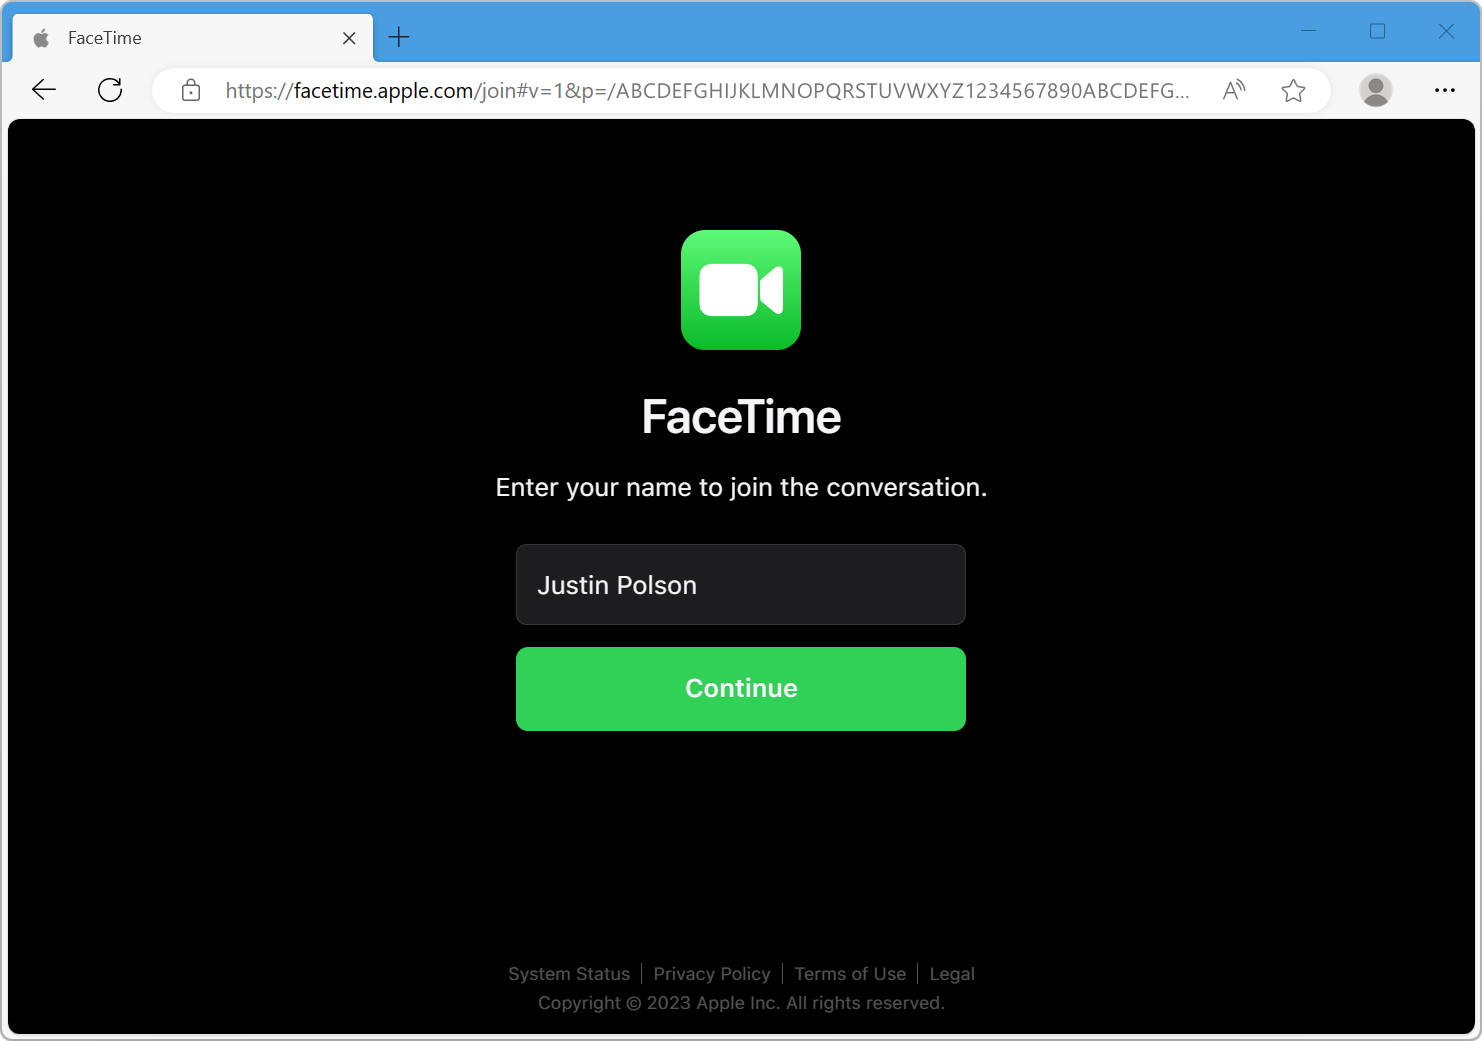 Pantalla de enlace de FaceTime en el navegador web: “Escribe tu nombre para unirte a la conversación”.